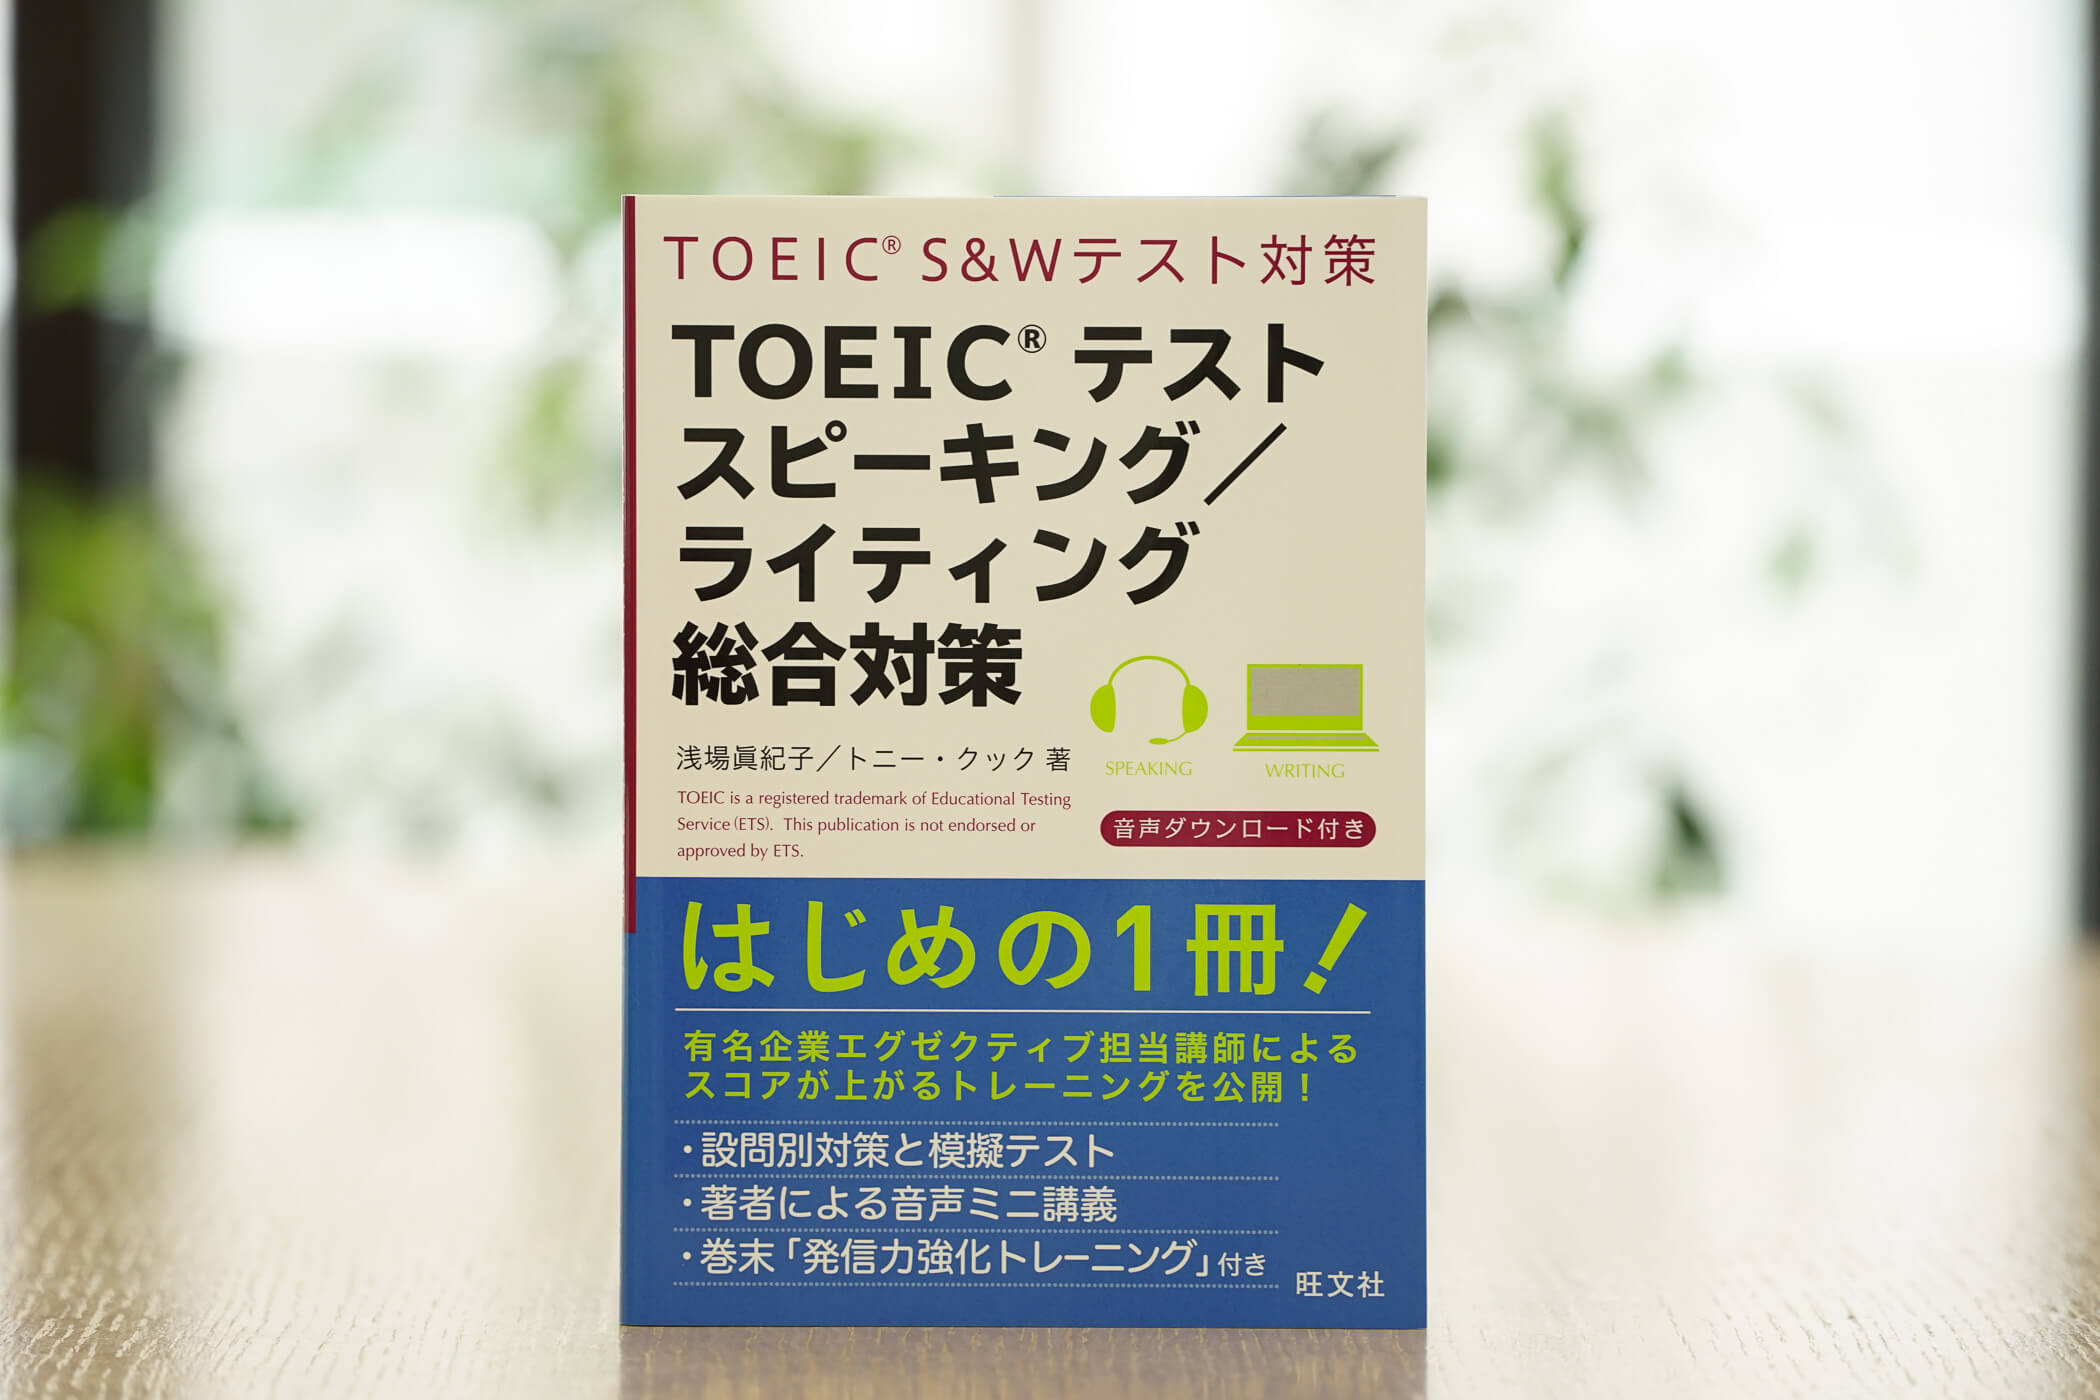 Toeic S Wテストとは 概要と勉強法 試験対策 旺文社 英語の友